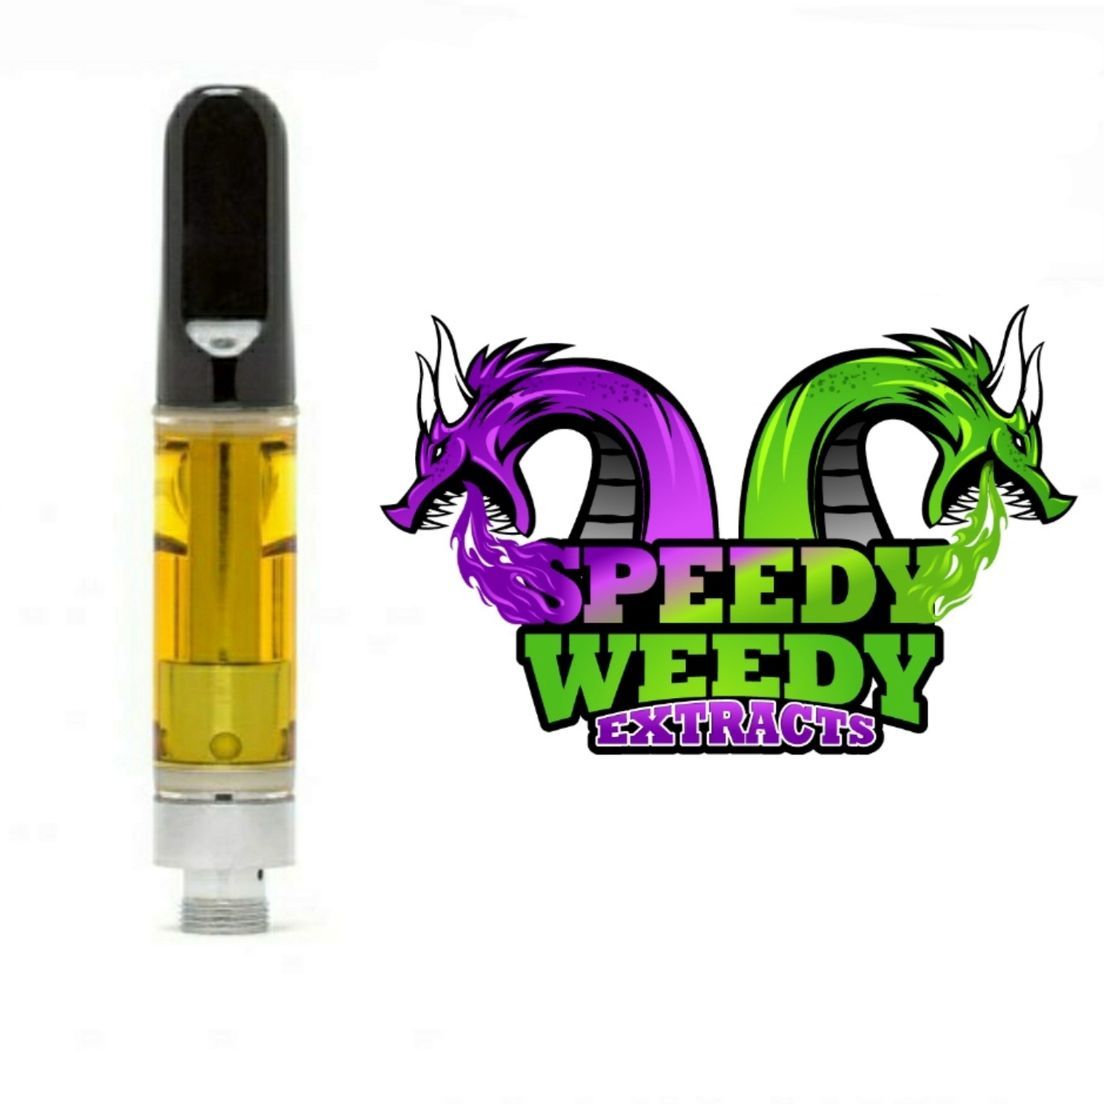 1. Speedy Weedy 1g Cartridge - GMO